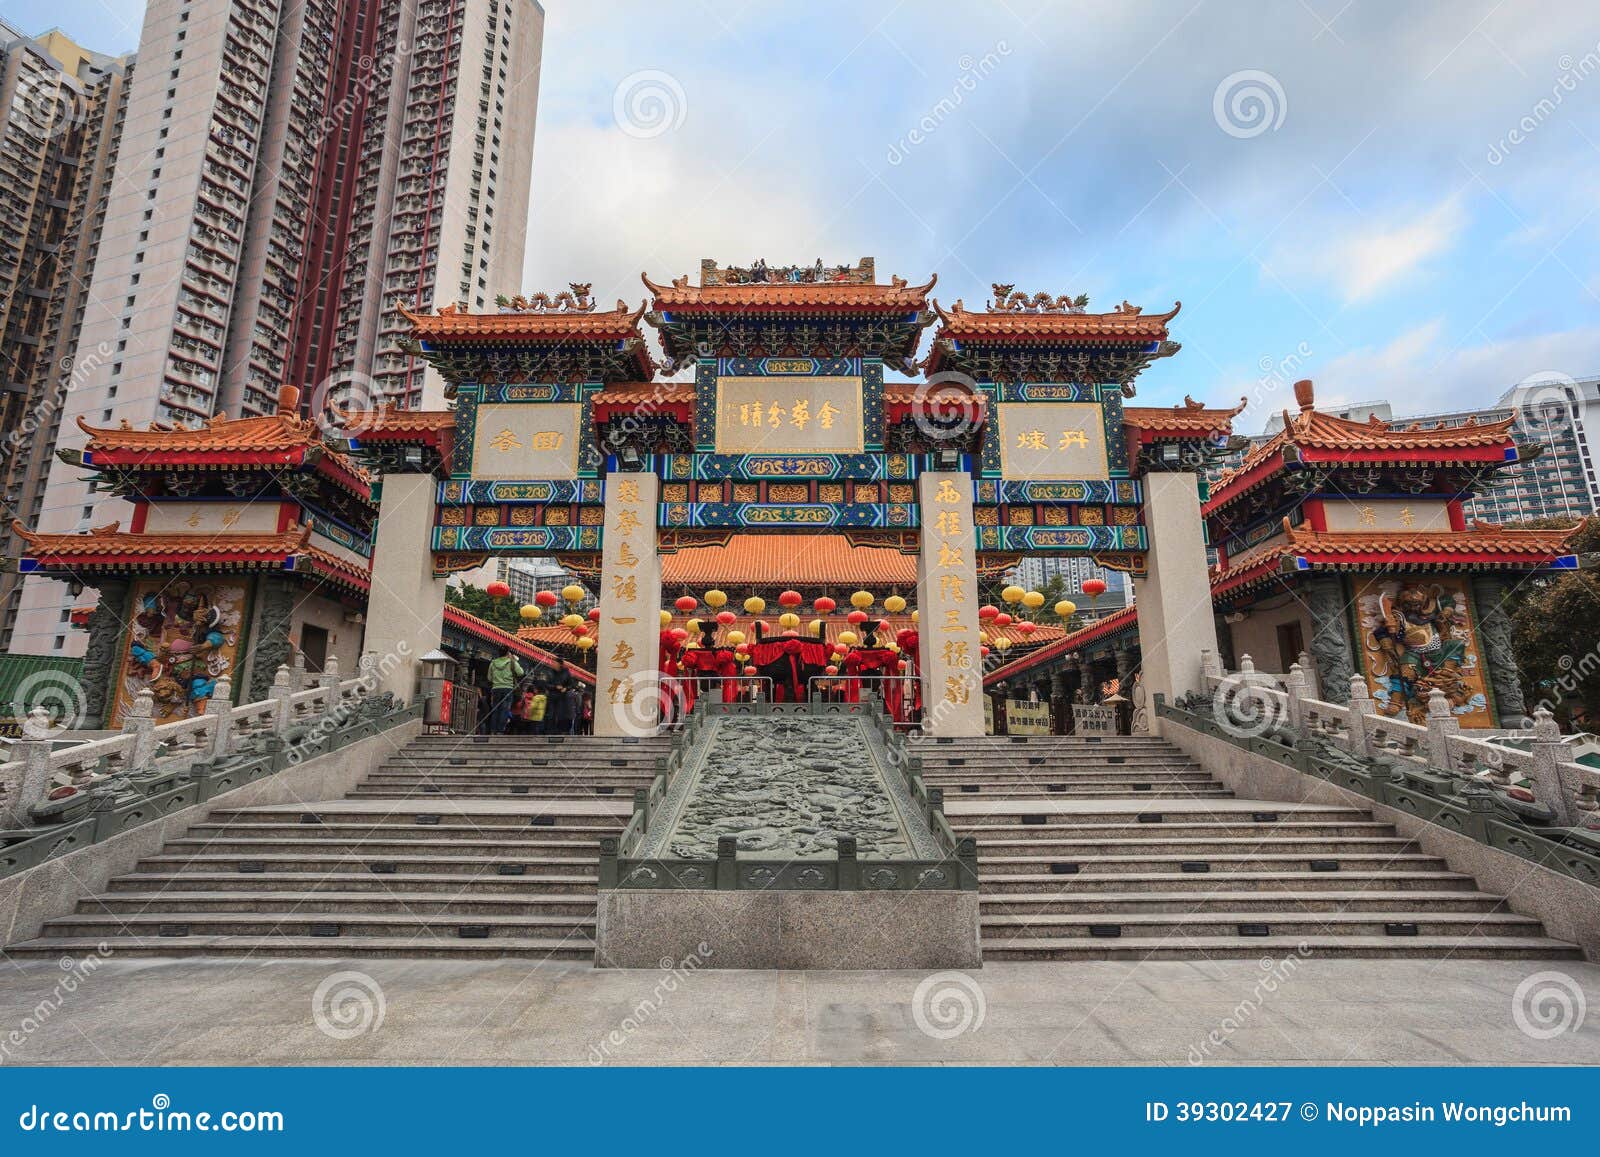 wong tai sin temple, hong kong